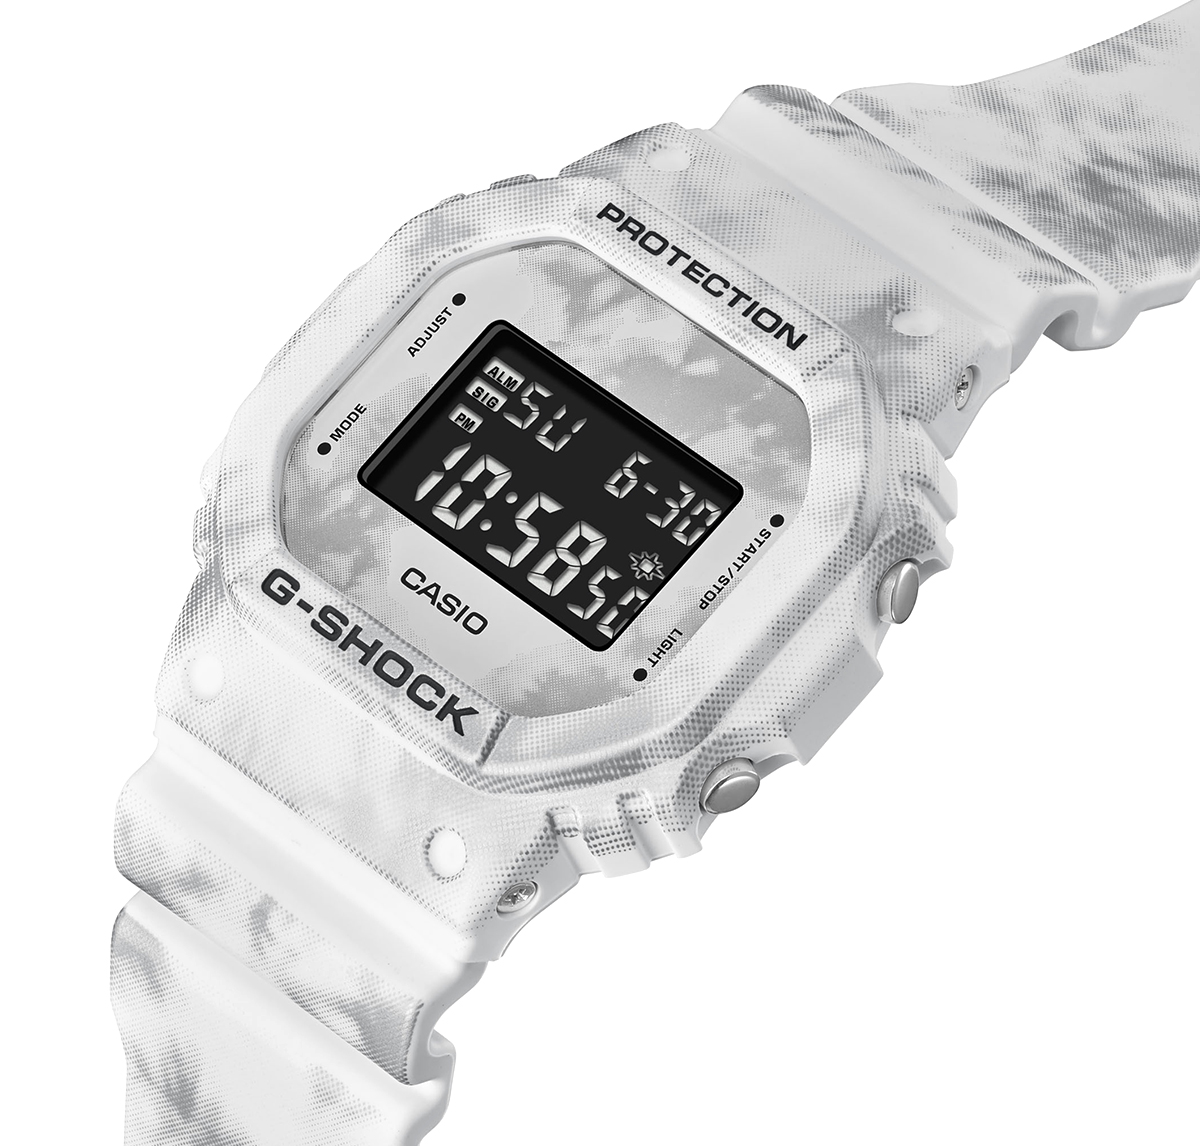 G-Shock DW-5600GC-7ER - Snow Camo - White detail